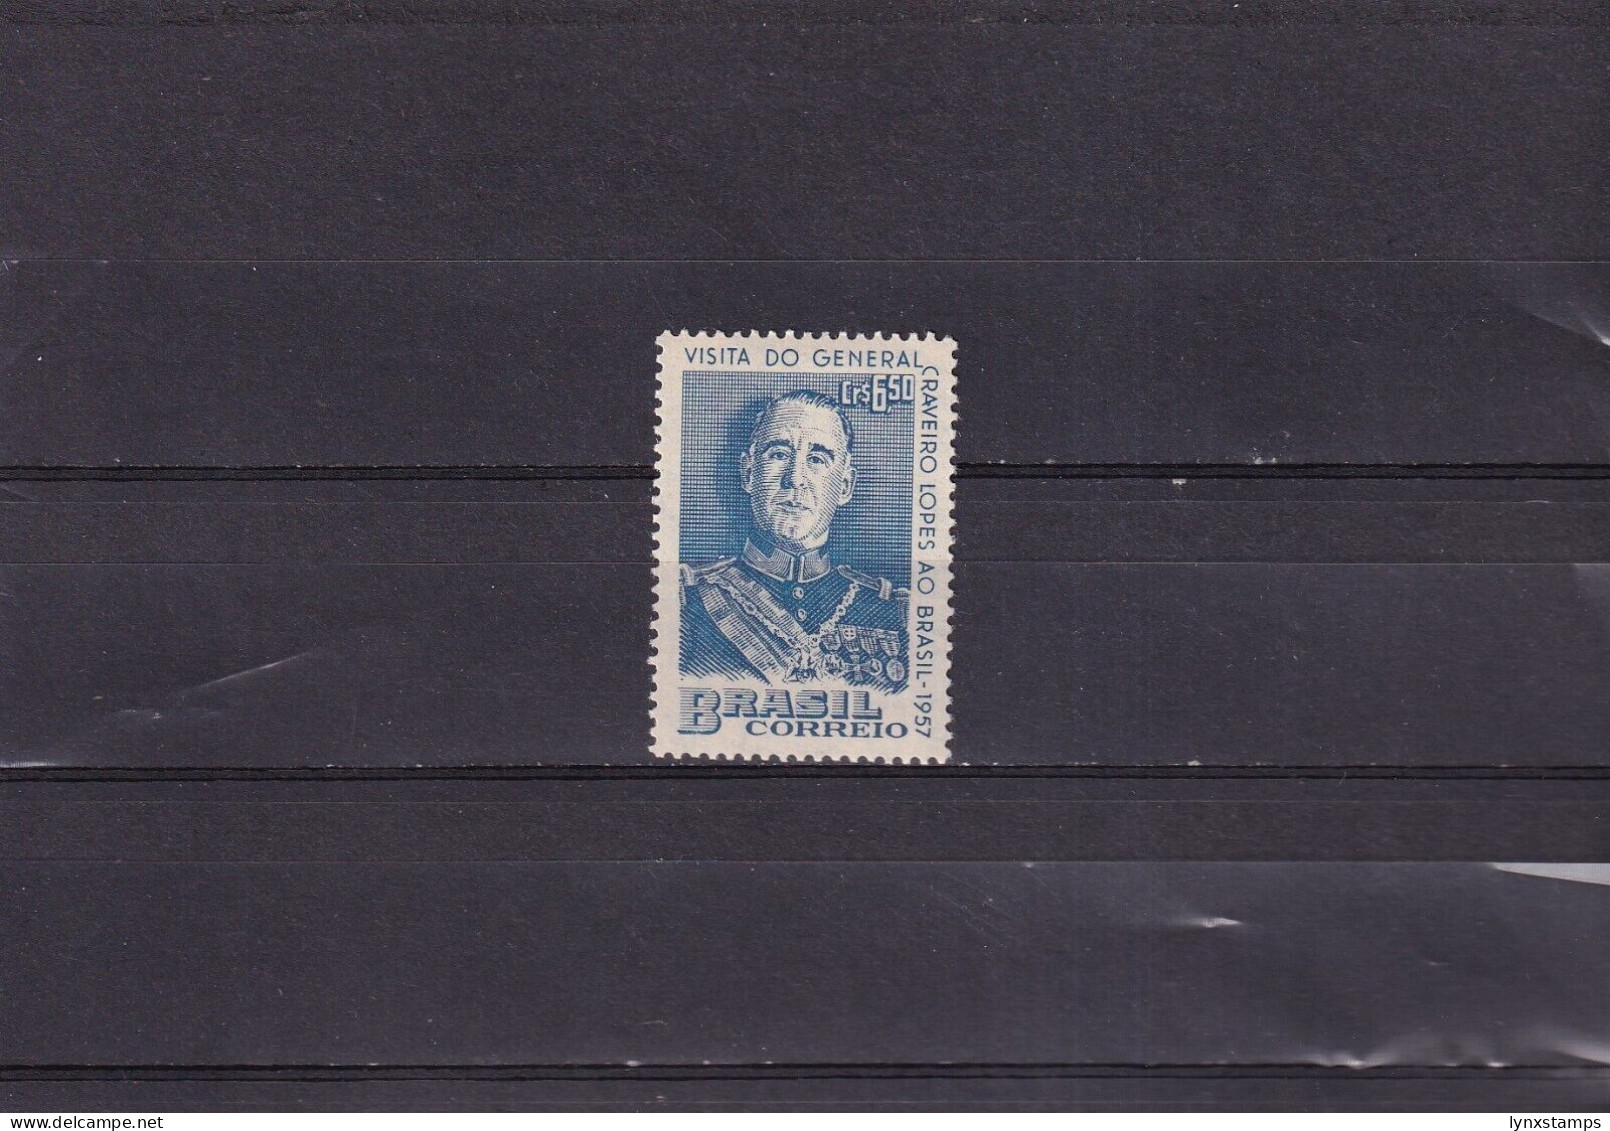 ER03 Brazil 1957 Visit Of Portugal's President - MNH Stamp - Nuevos